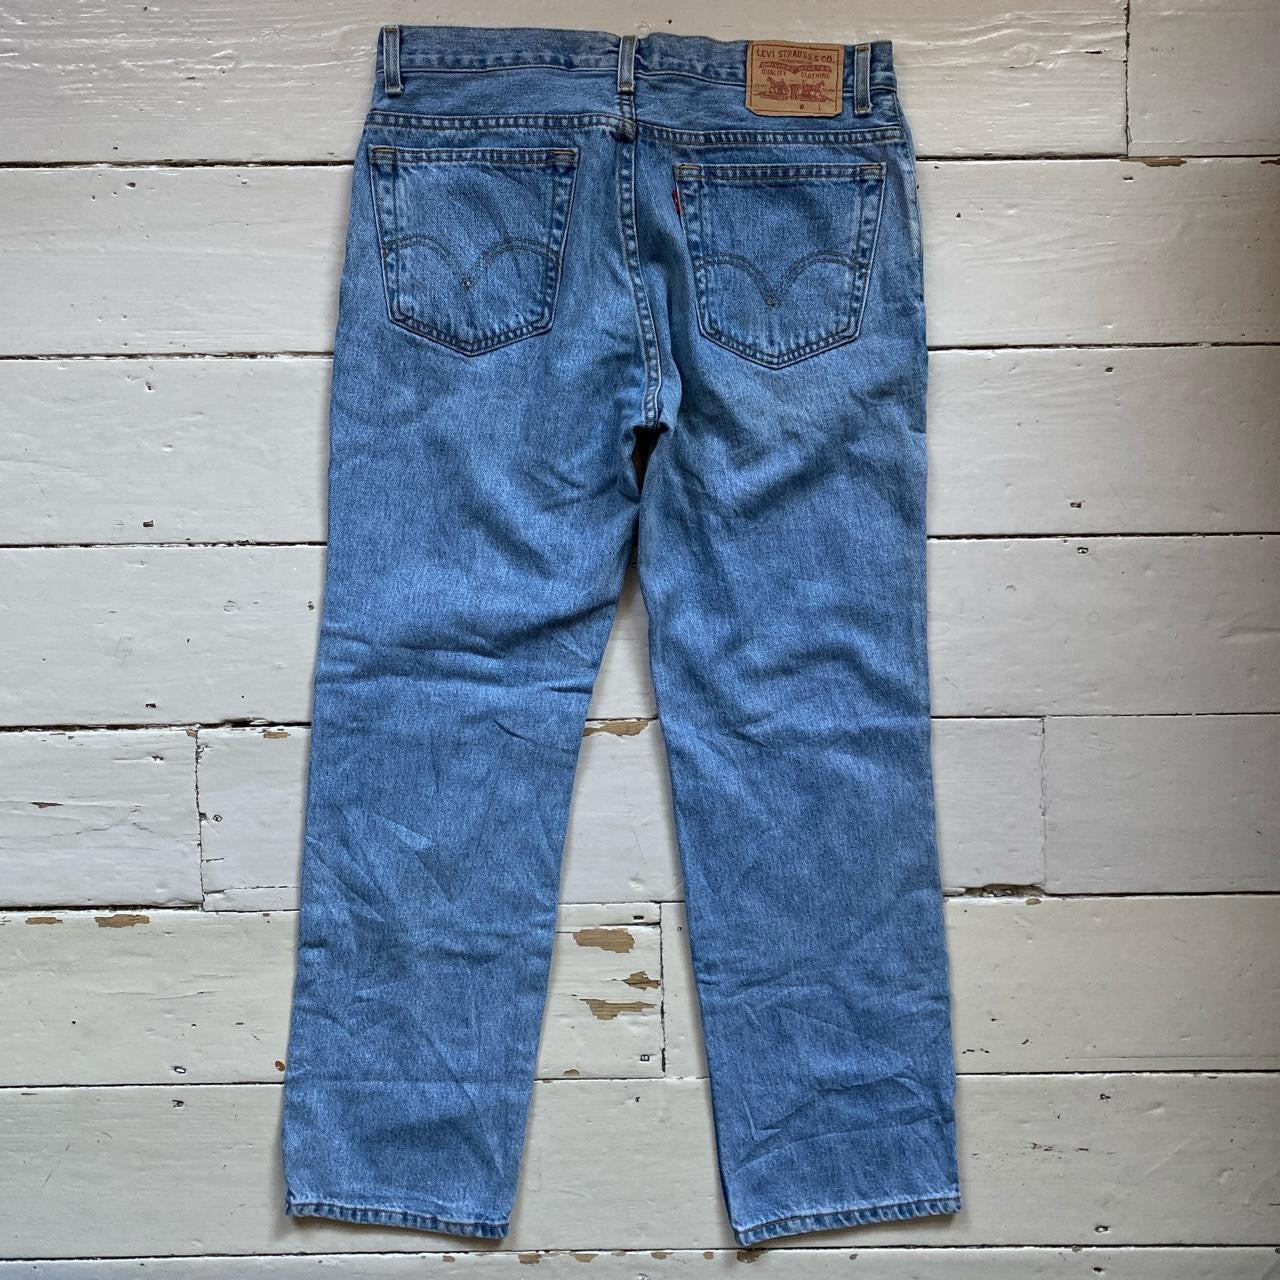 Levis 516 Light Blue Jeans (33/30)